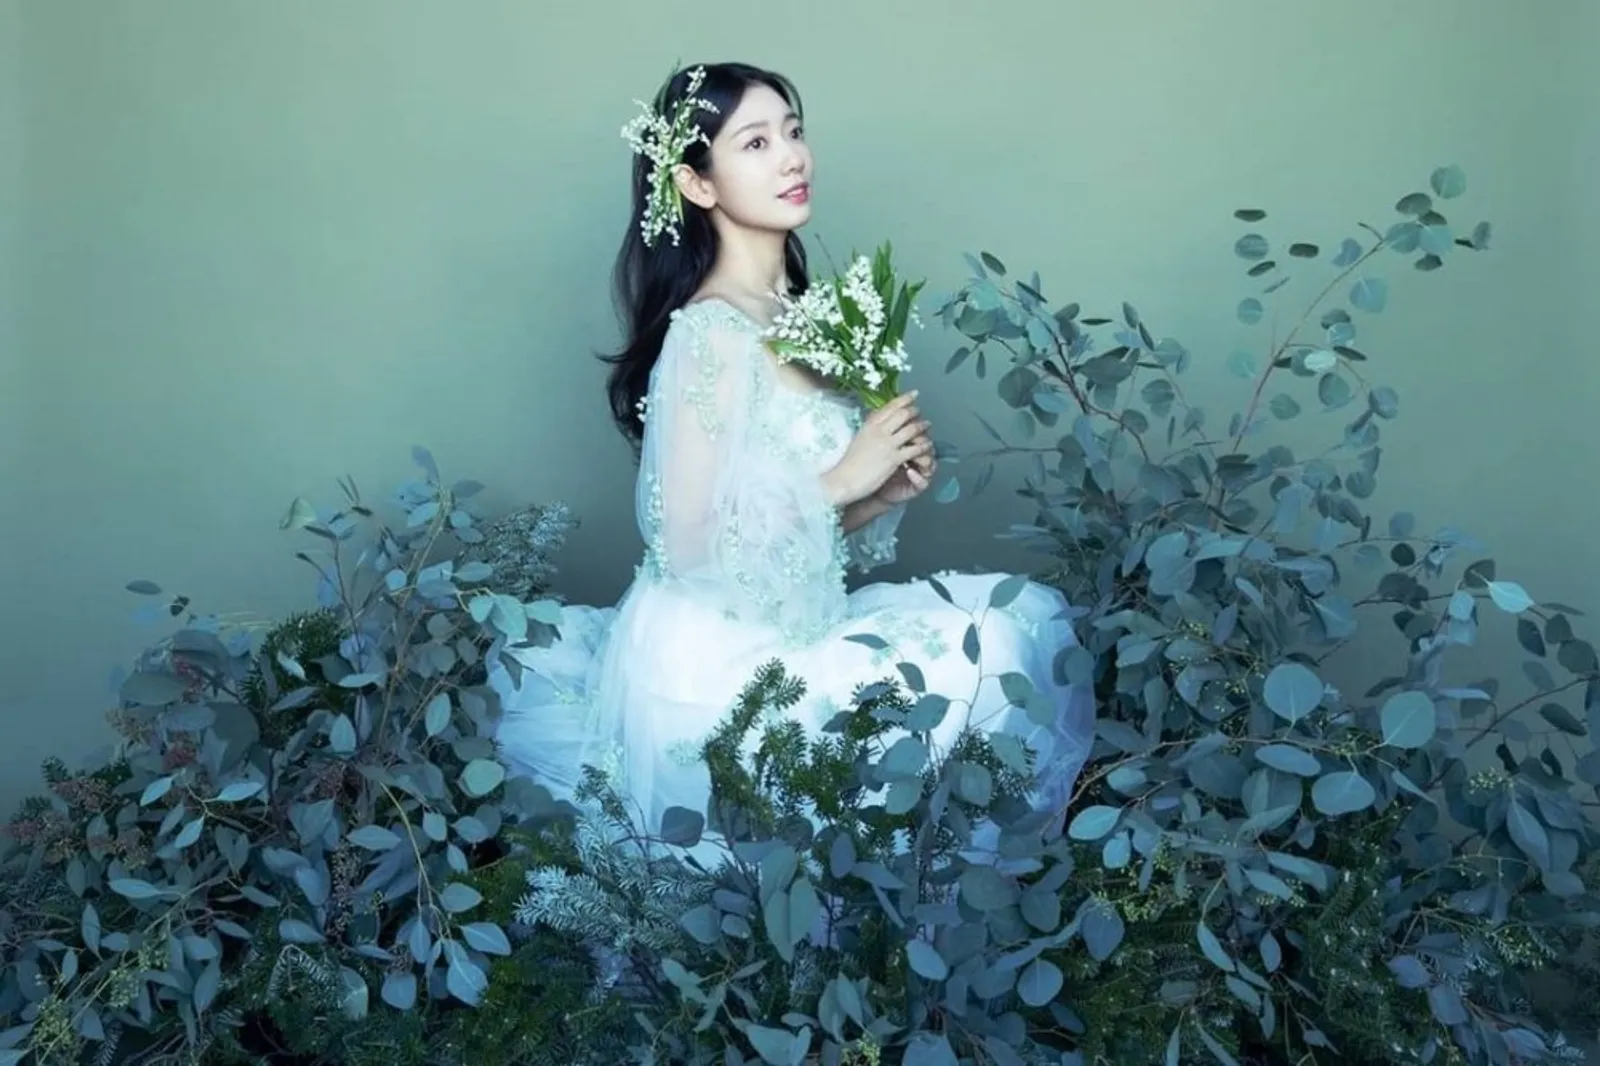 Intip Potret Pernikahan Park Shin Hye & Choi Tae Joon